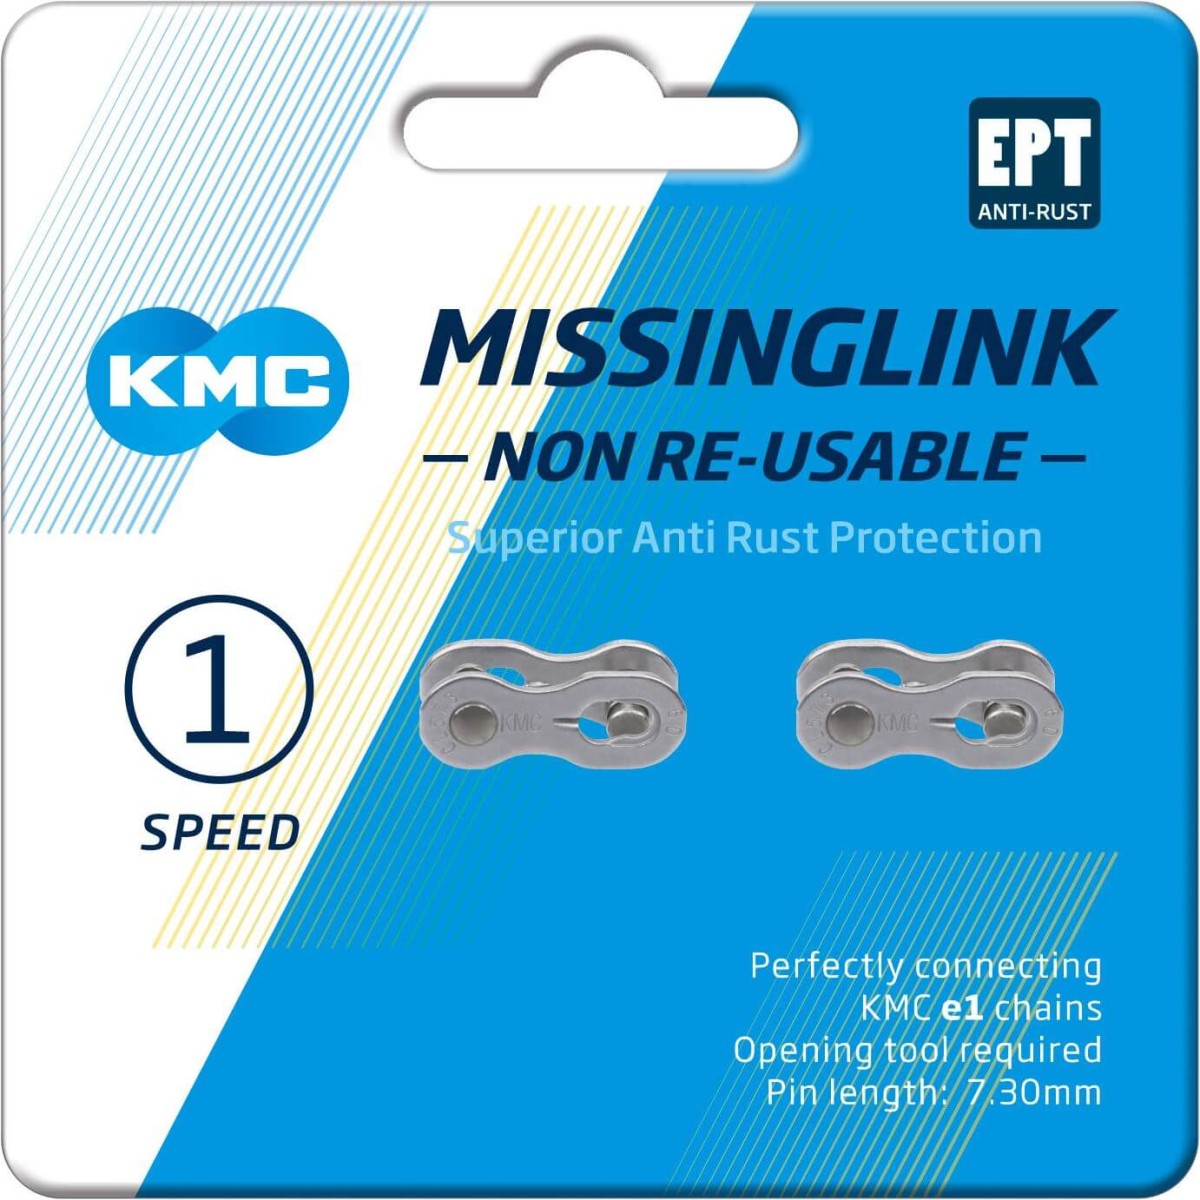 KMC missinglink E1/E8 3/32 EPT op kaart (2) E-bike